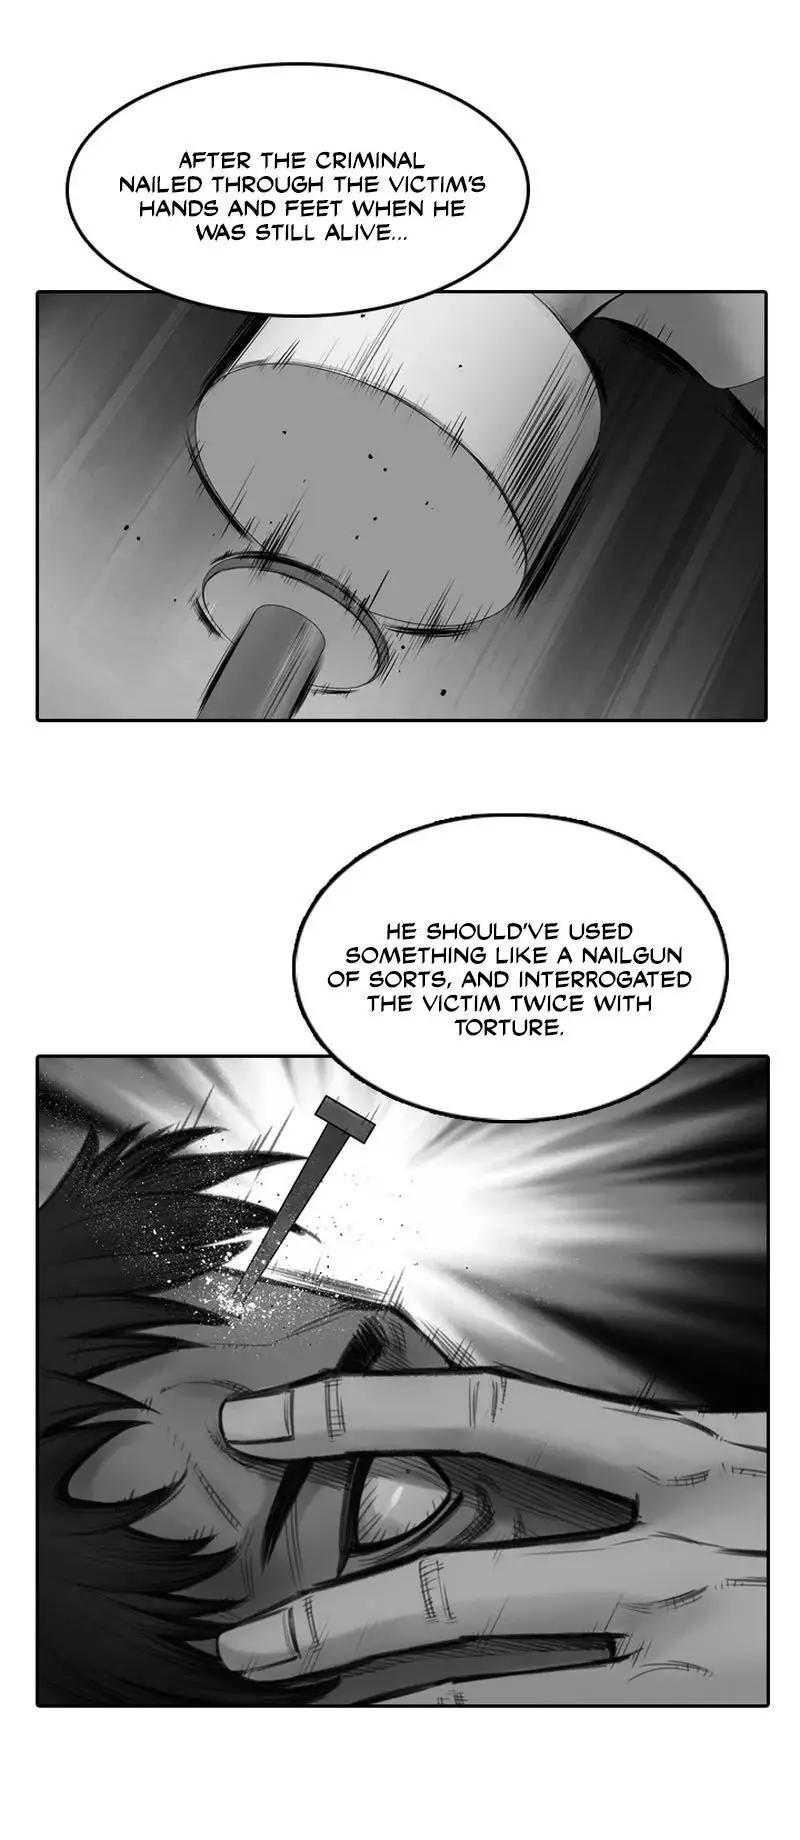 Evil Again - 1 page 12-6c0ae96a